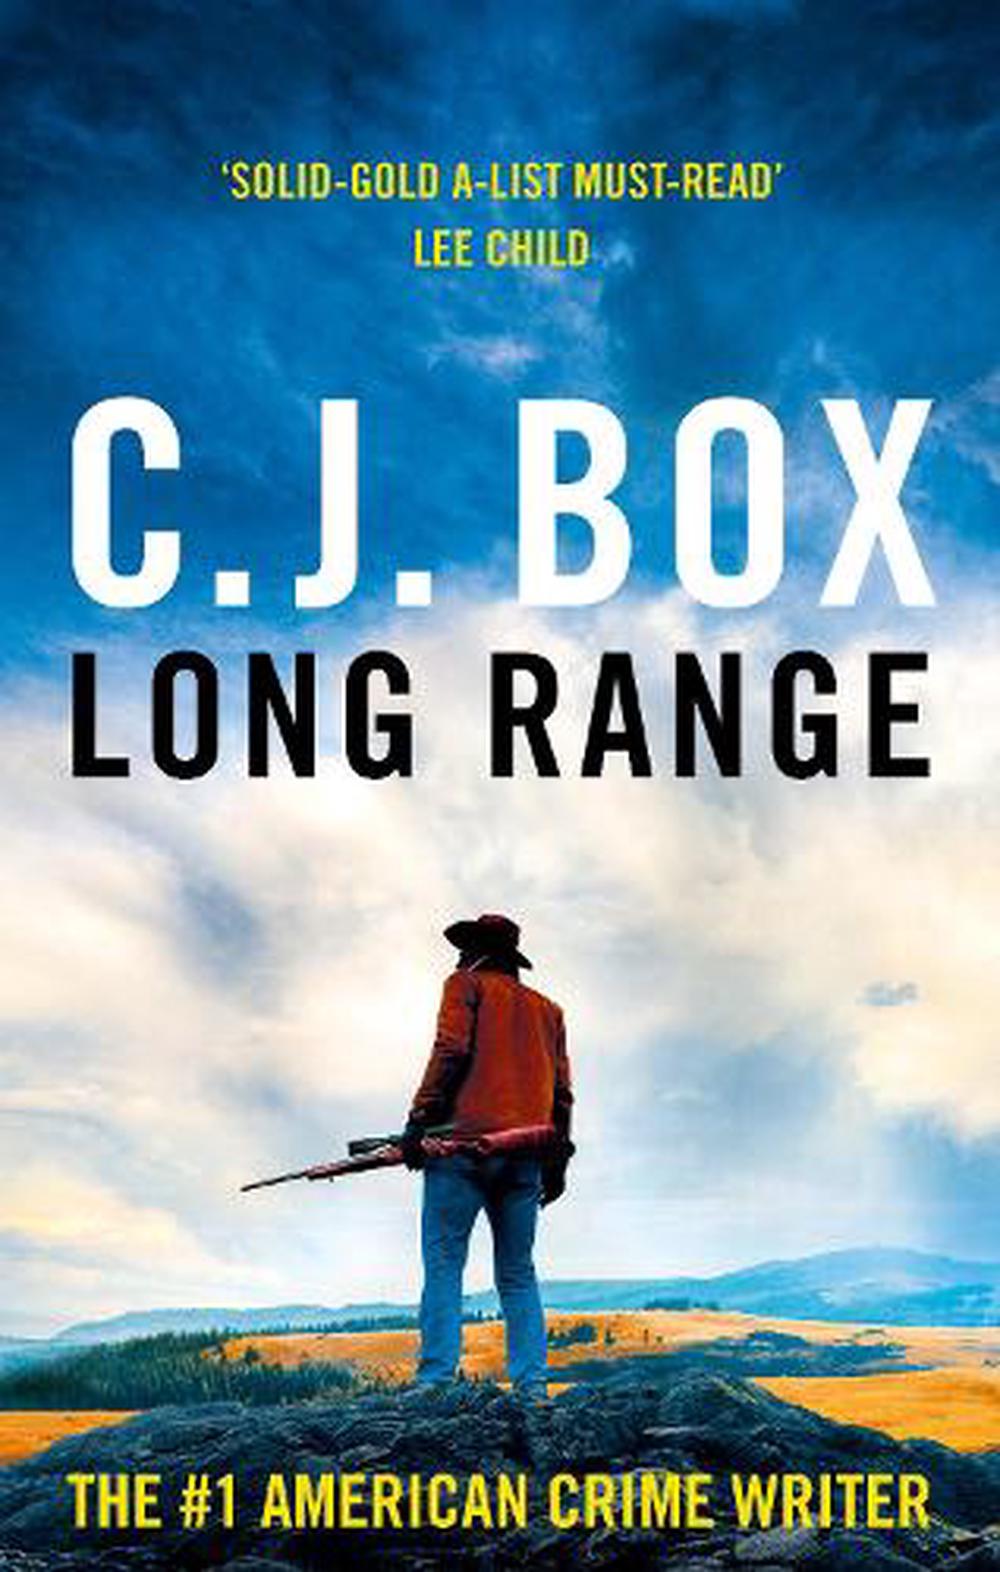 long range by cj box